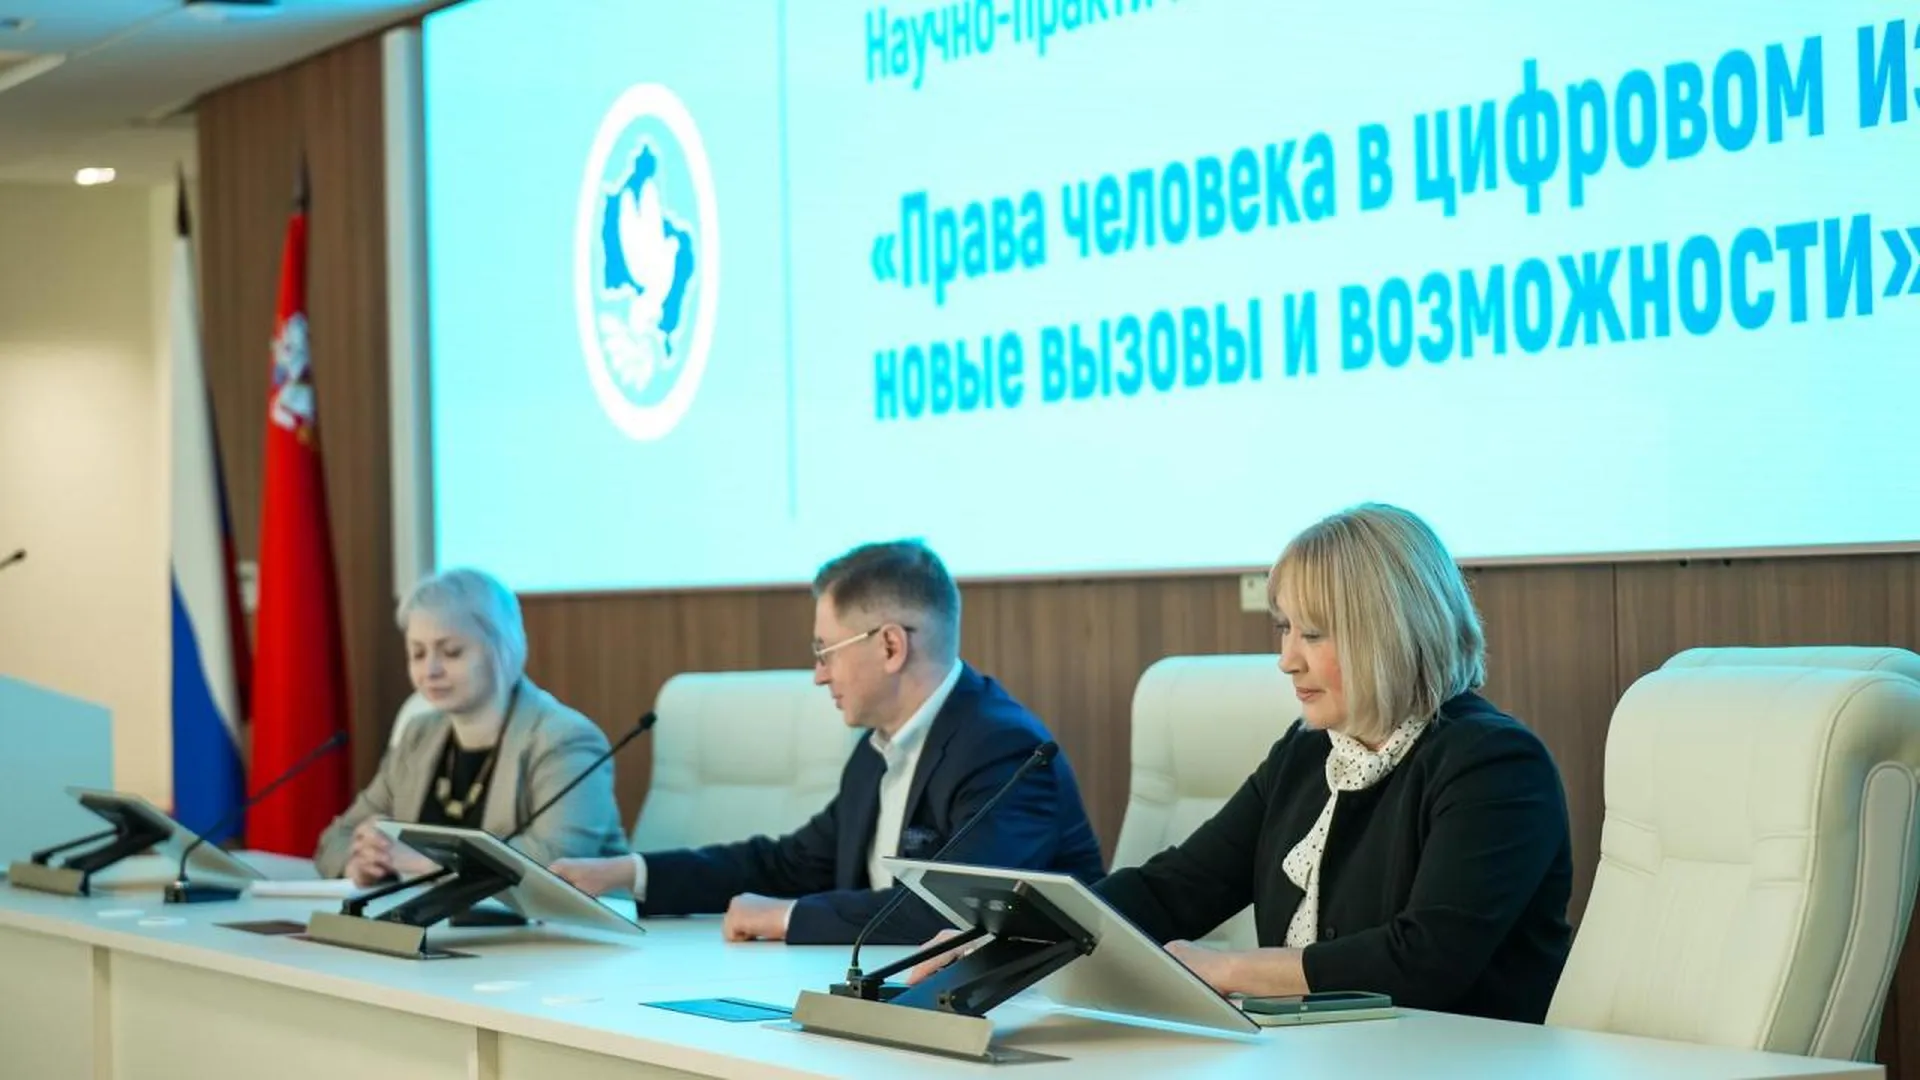 Вопросы цифровой гигиены обсудили в аппарате омбудсмена Московской области